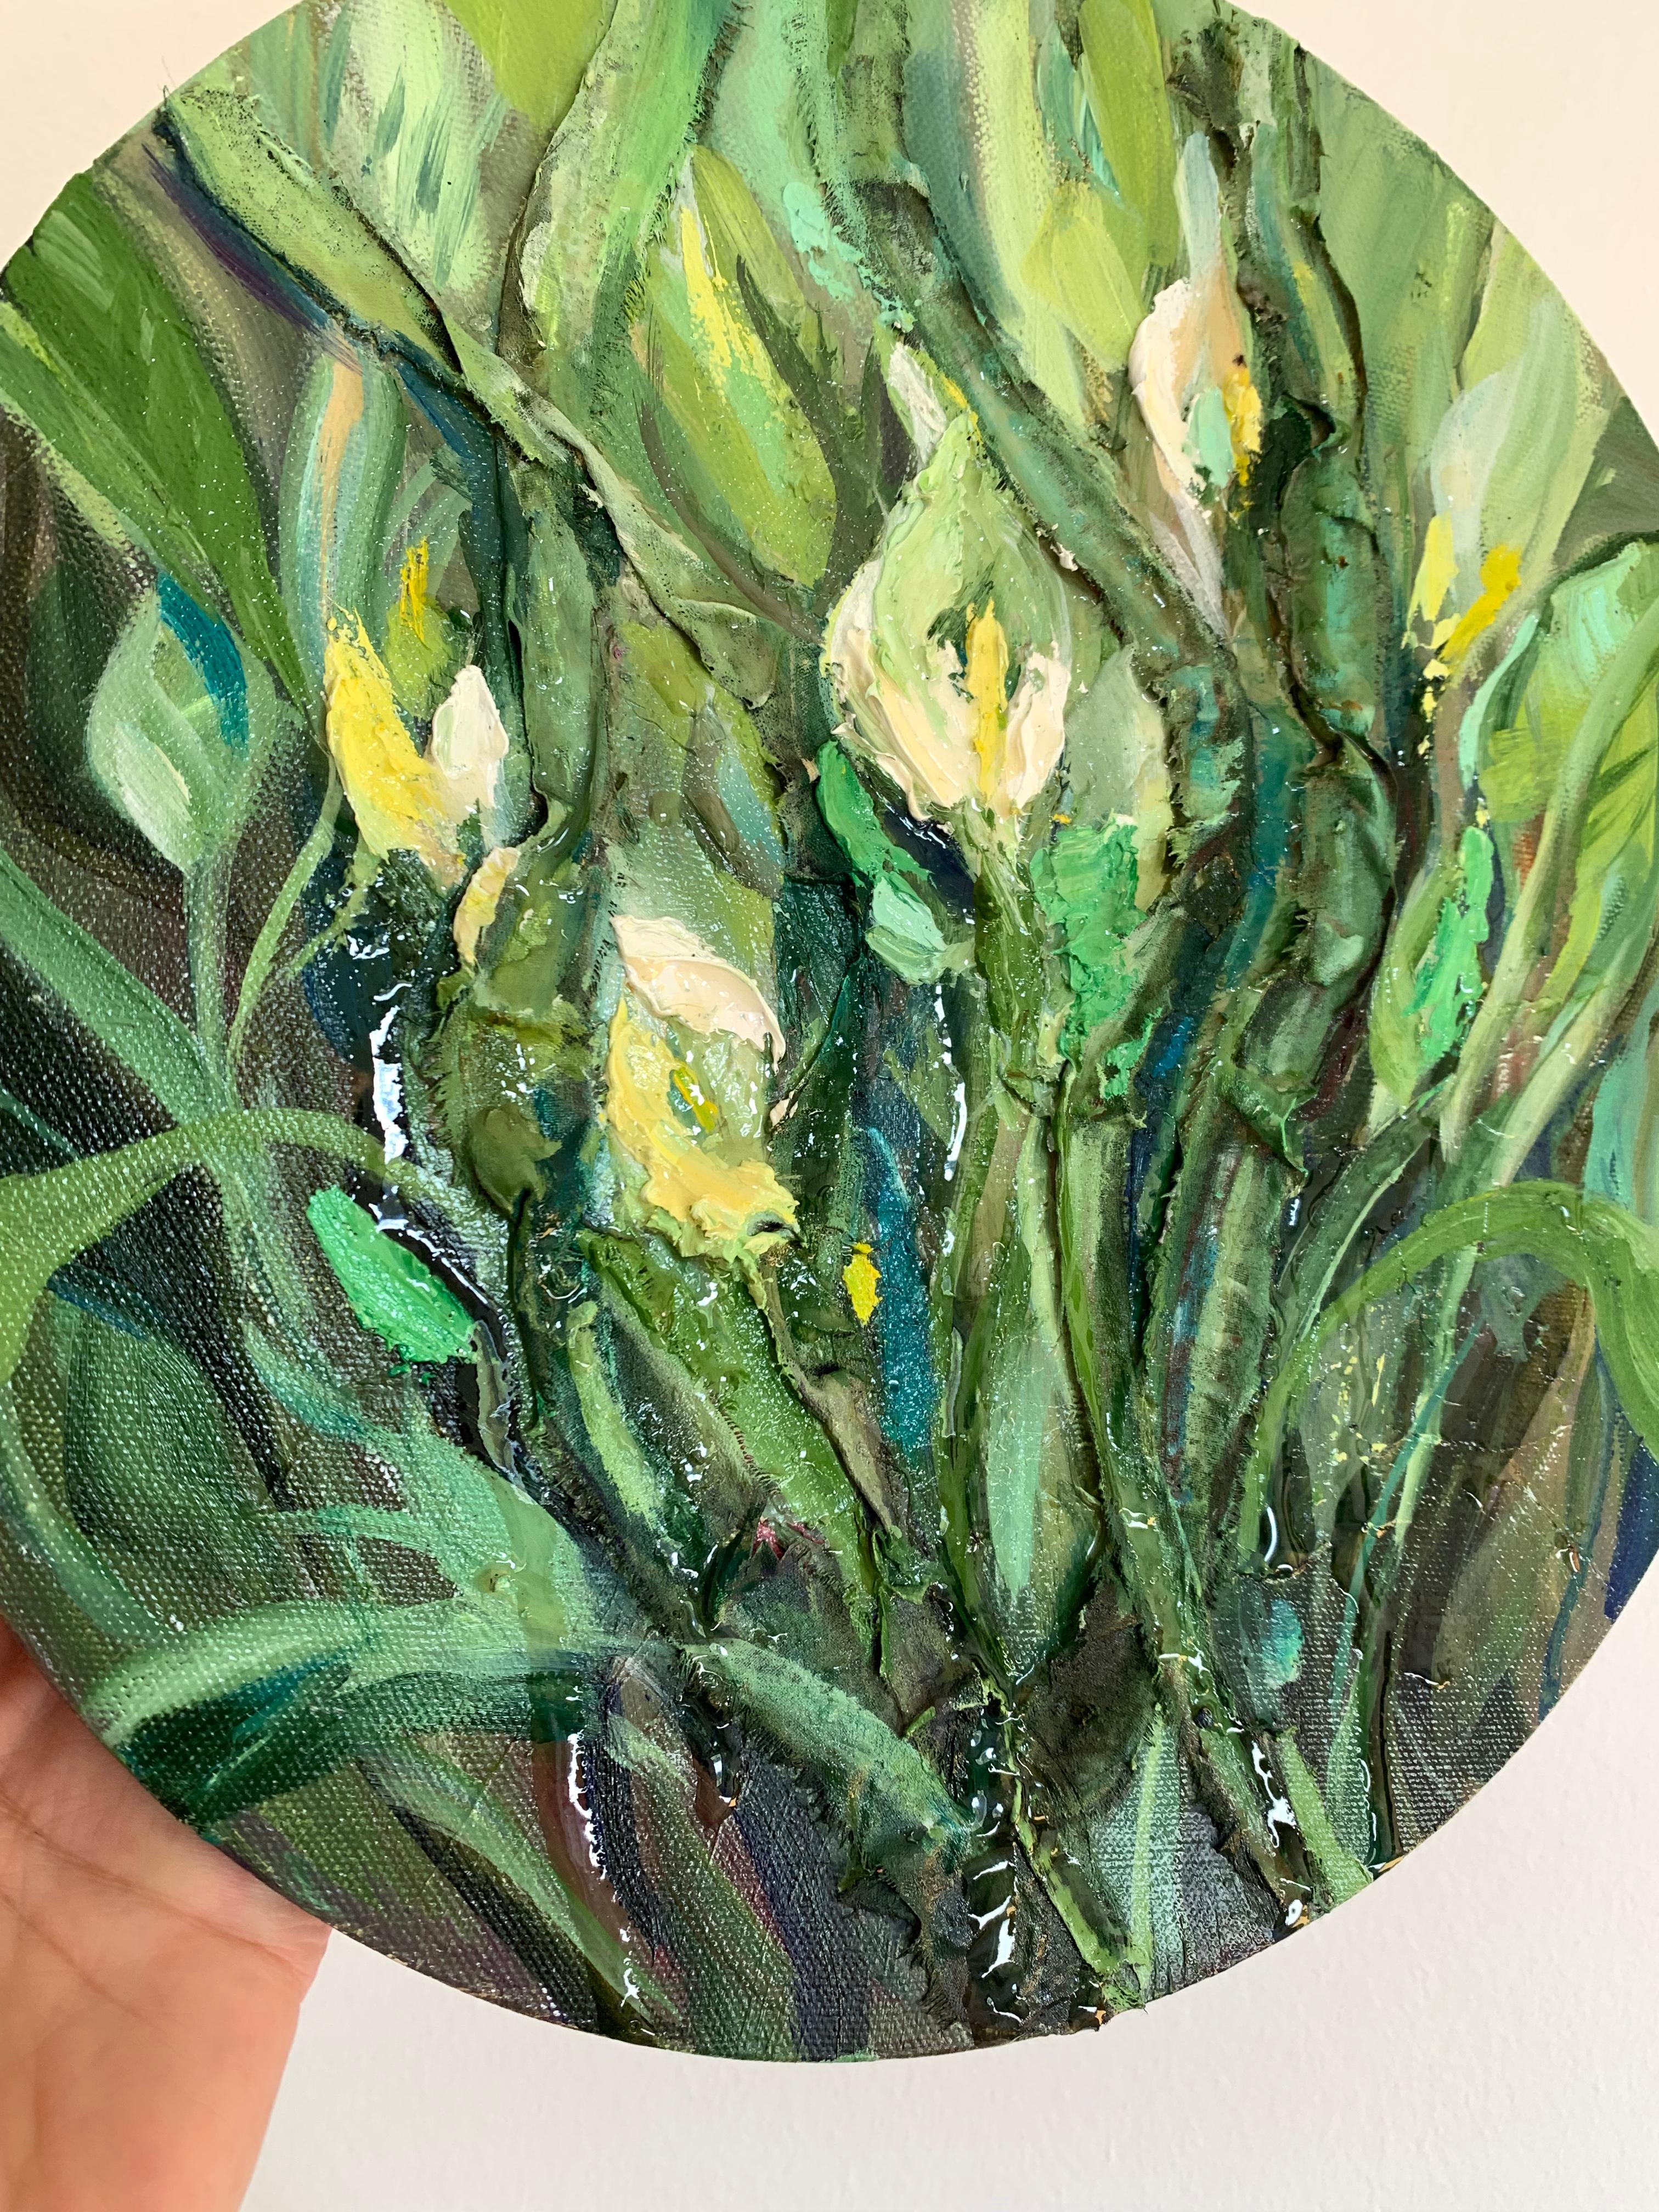 Abstrakte strukturierte grüne Blumen Malerei auf Kreis Leinwand. Die Tropfen des Harzes geben uns ein Gefühl für die Idee des Gemäldes - die facettenreiche Natur einer Frau... 
 
- Original Ölgemälde
- 30x30 cm (11,8 x 11,8 Zoll)
- 0.4 Zoll dicke